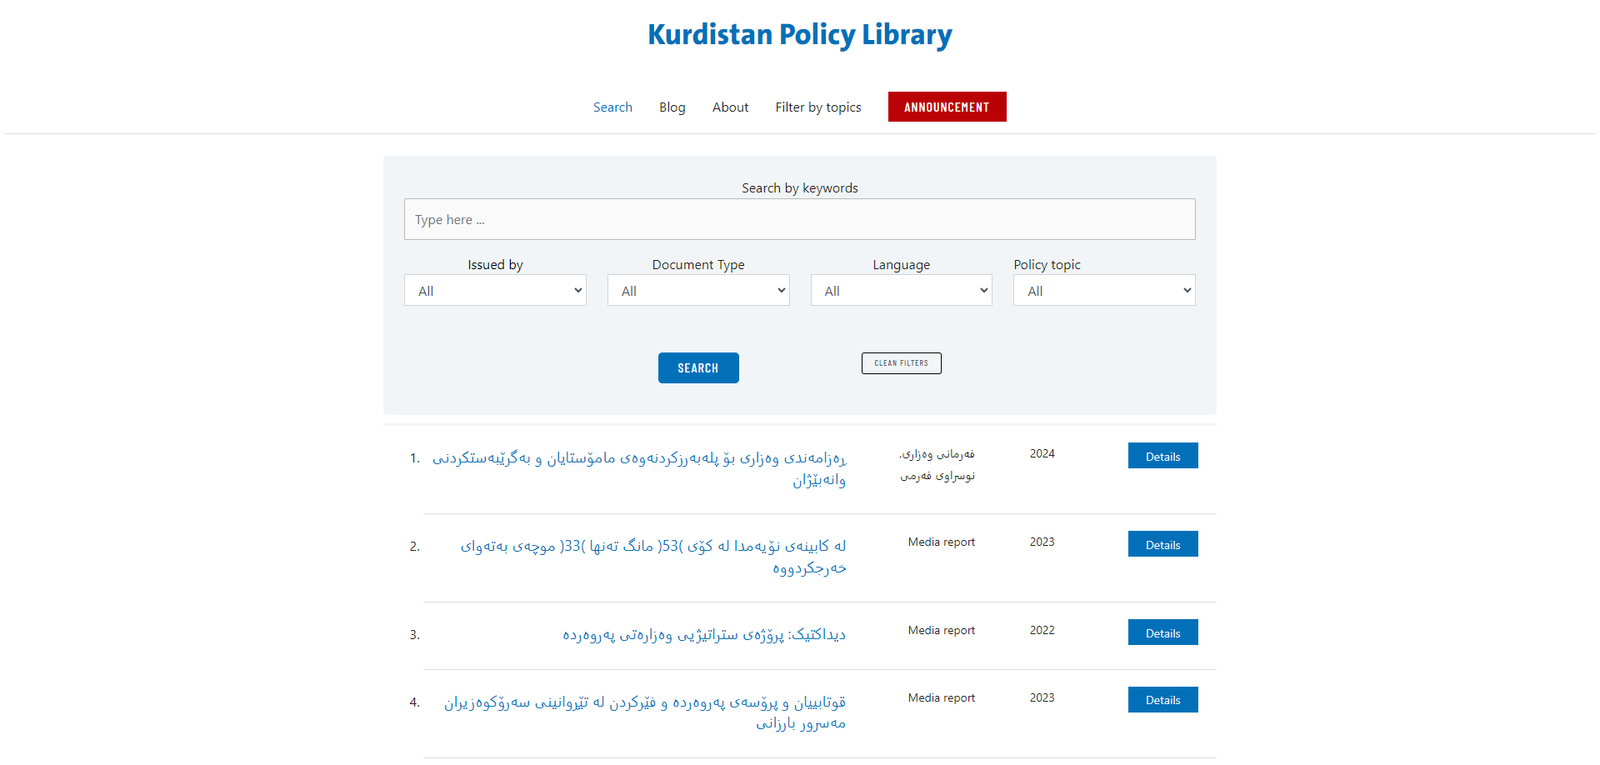 kurdistanpl.com case study project built by Web For Scholars